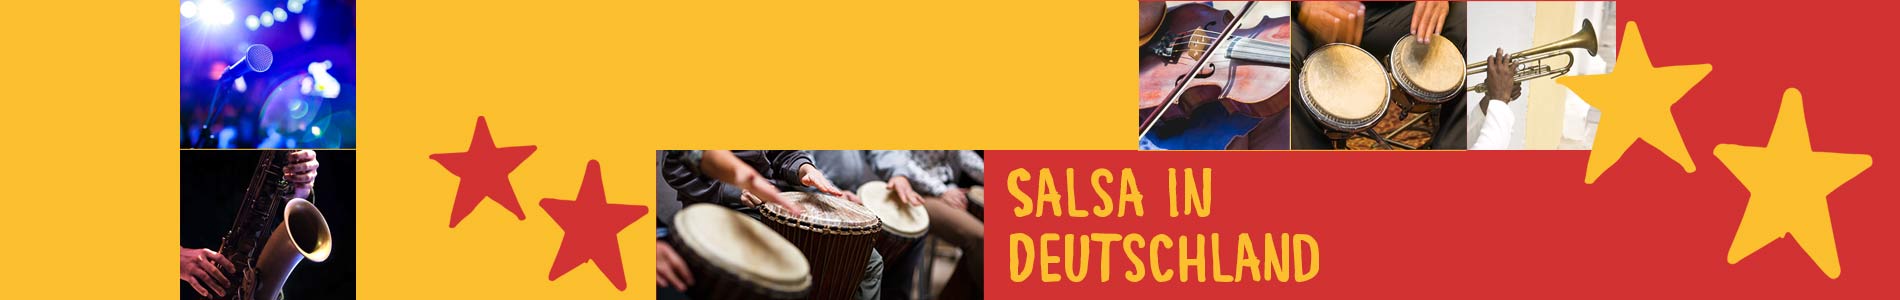 Salsa in Burtenbach – Salsa lernen und tanzen, Tanzkurse, Partys, Veranstaltungen